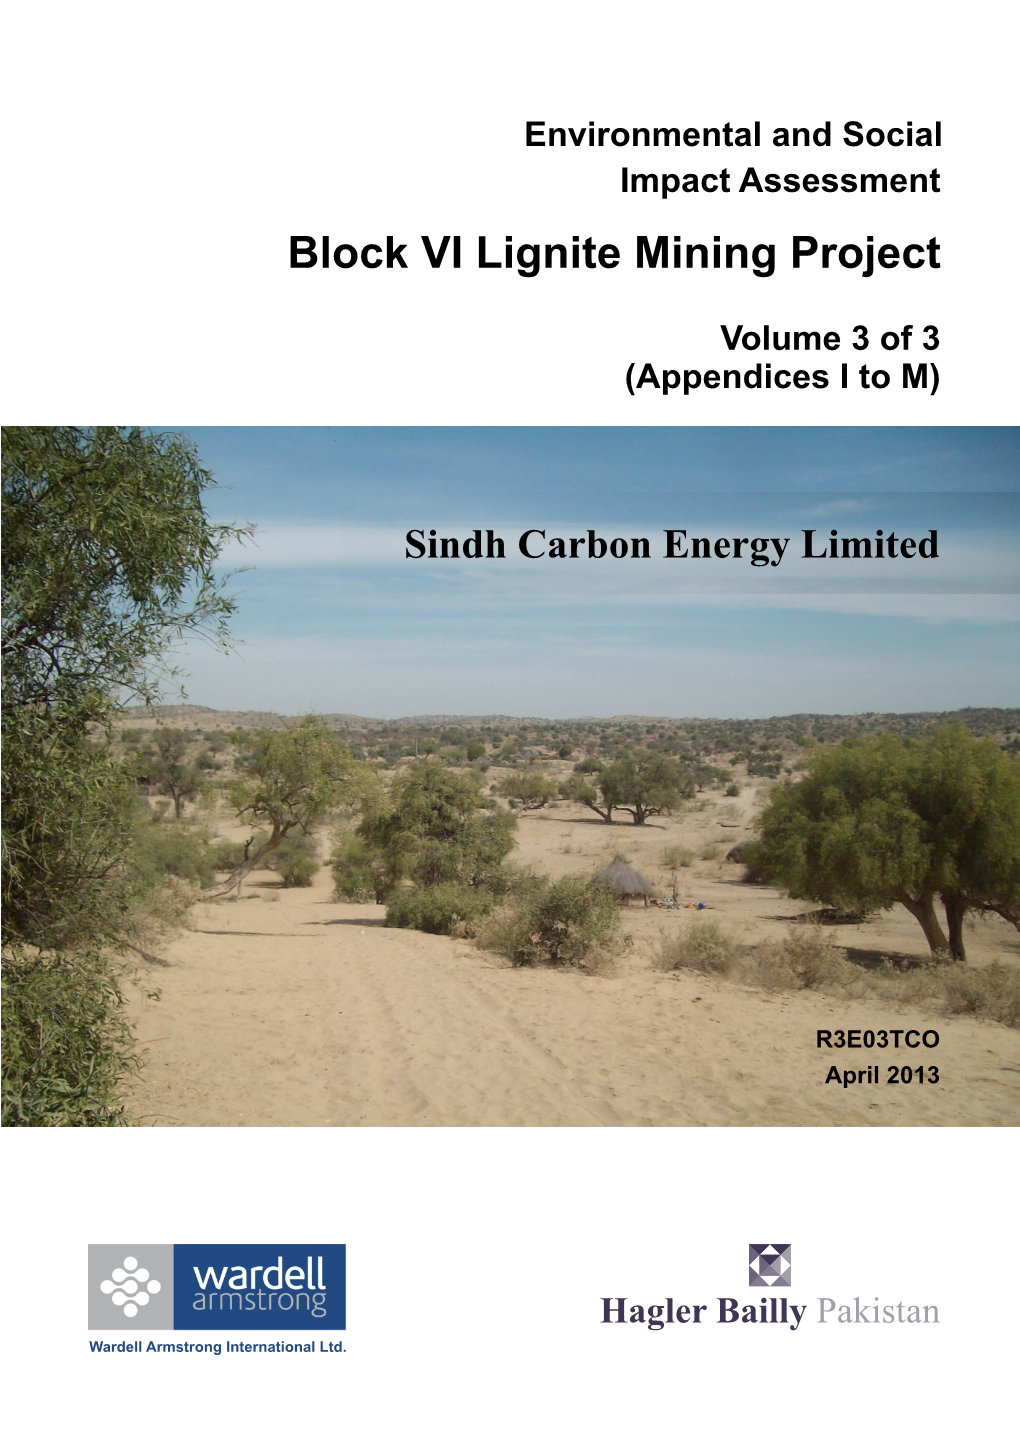 ESIA of Block VI Lignite Mining Project